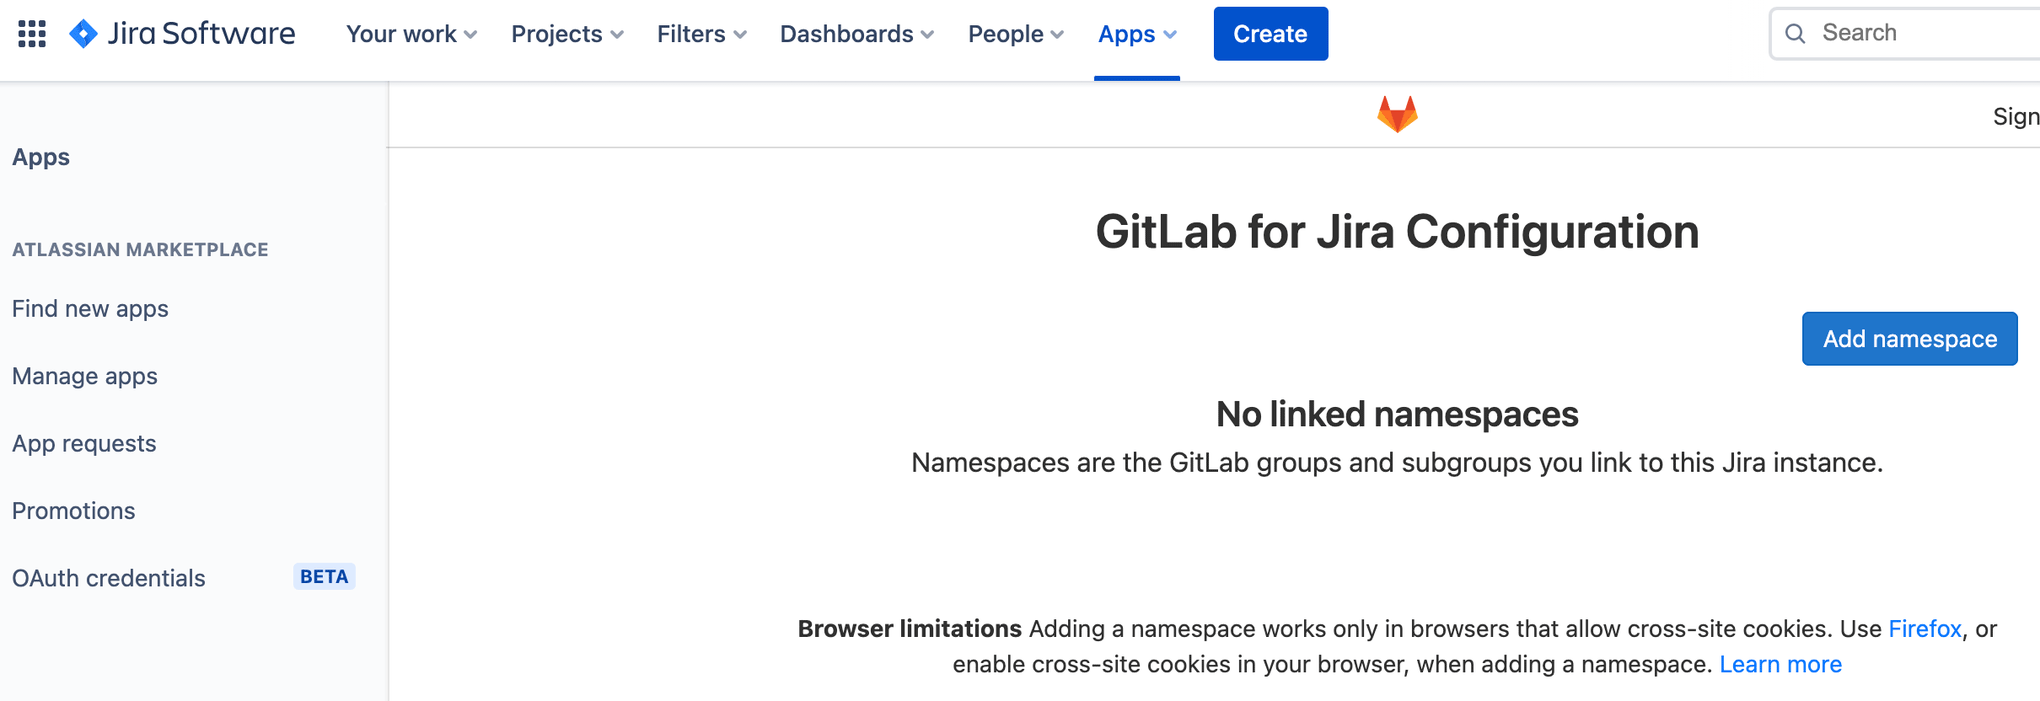 Bildschirm zum Hinzufügen eines Namespace zur Jira Software-Konfiguration für GitLab